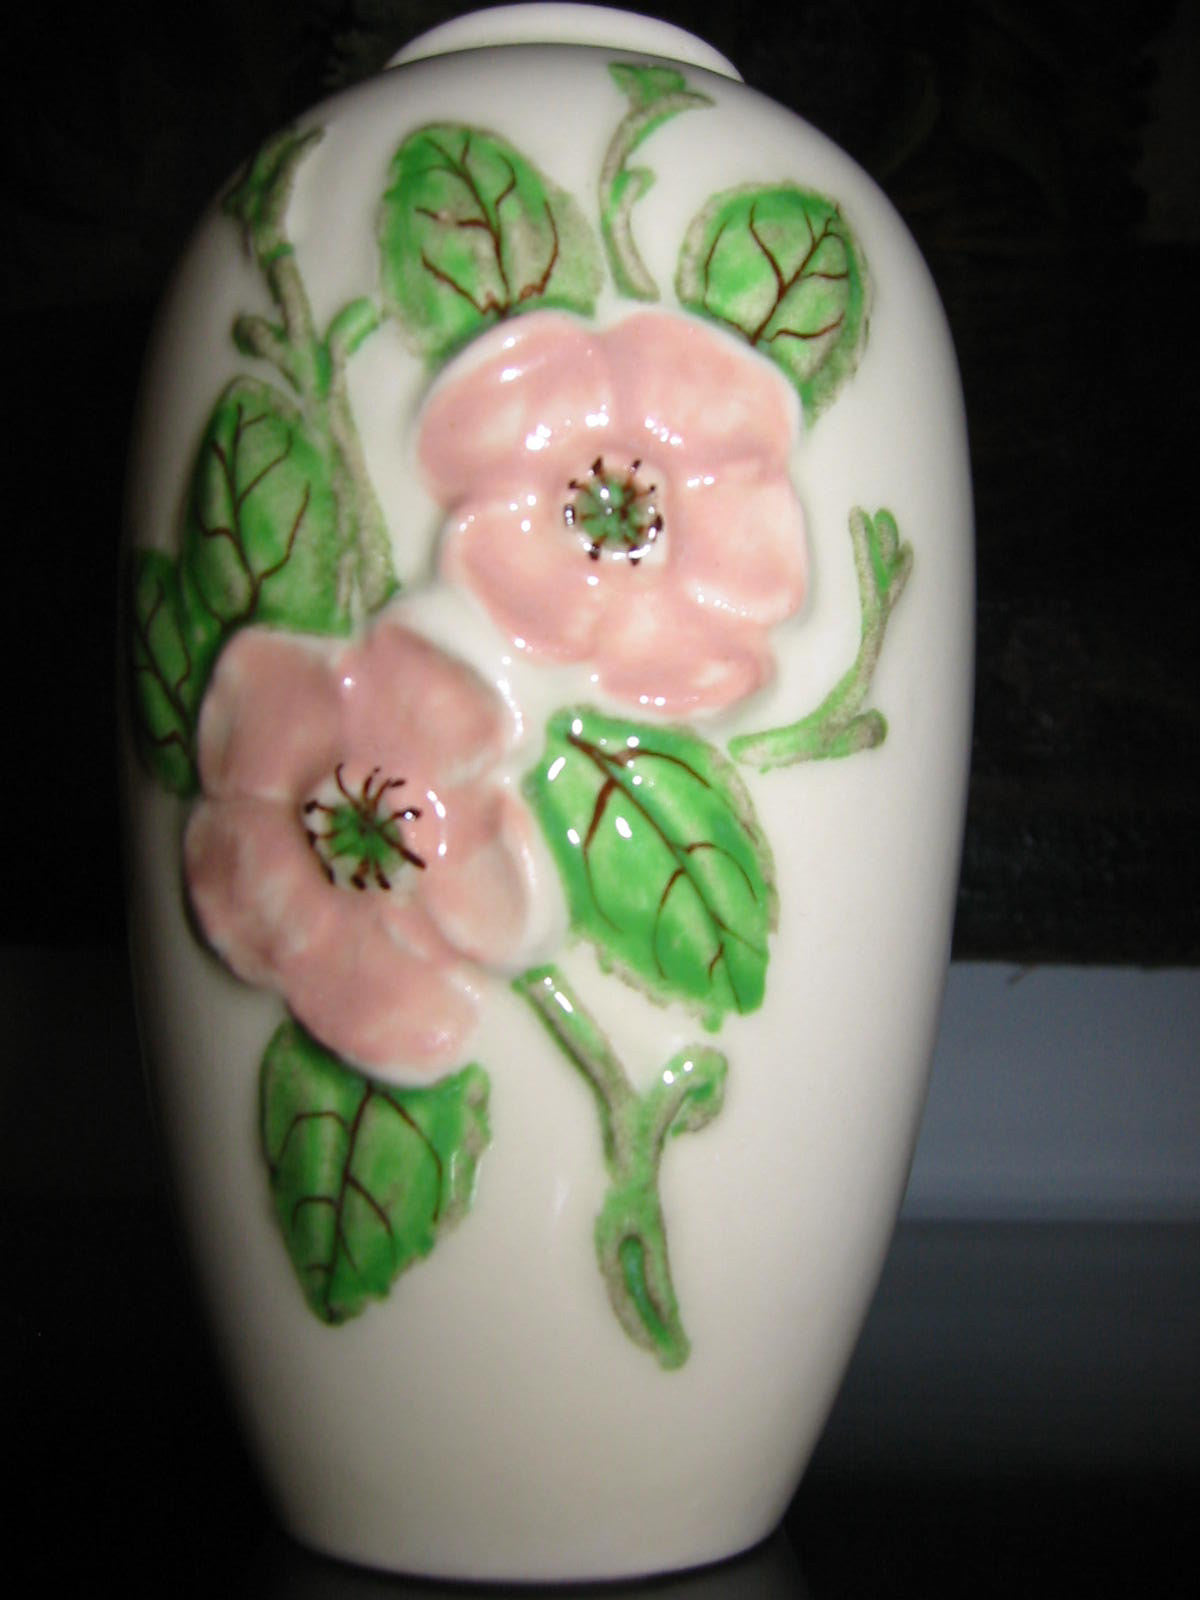 Hull Pottery Rosella Flower Vase Pink Rose Green Stem Design - Designer Unique Finds 